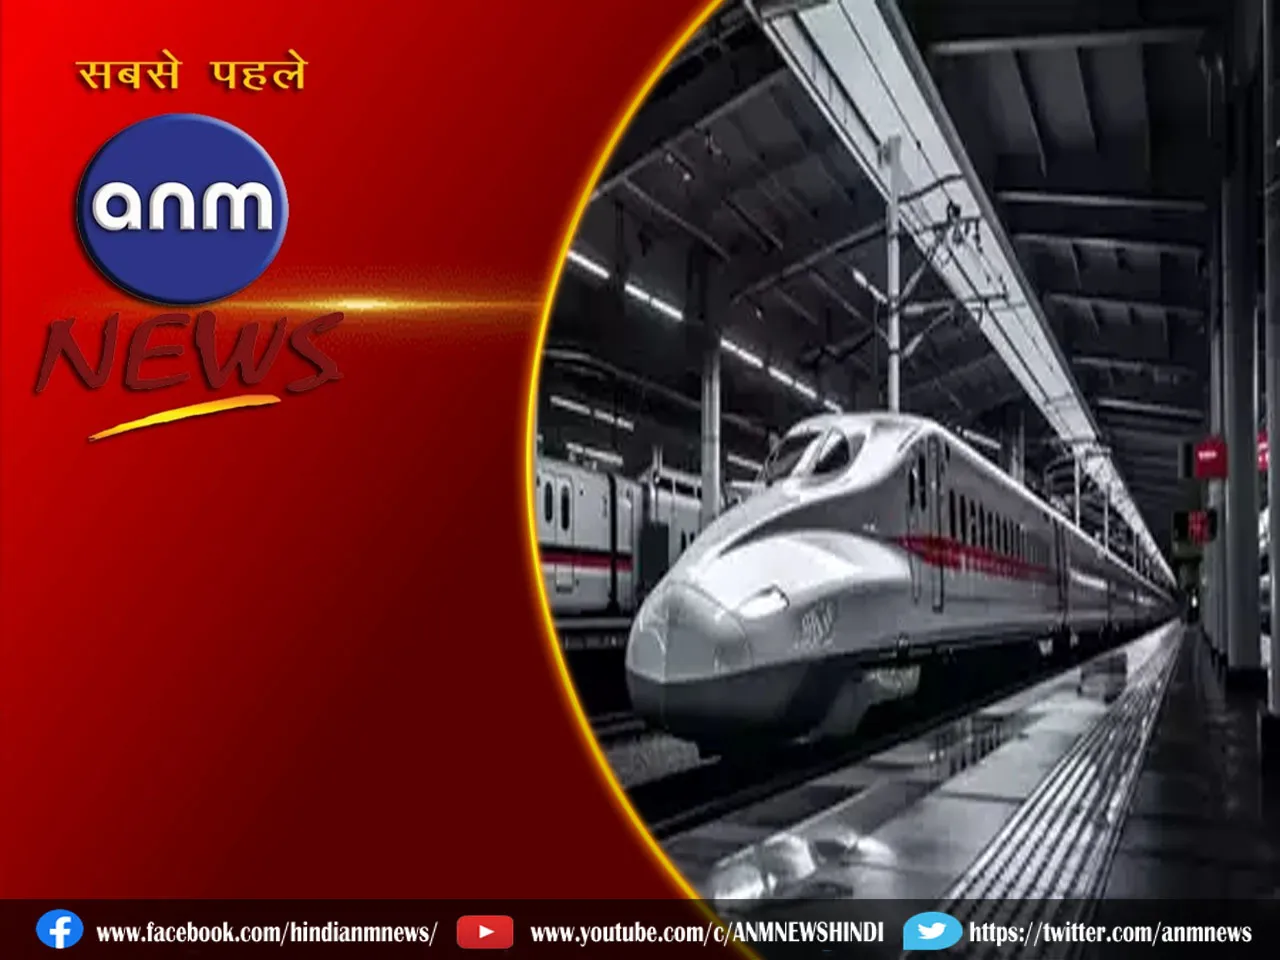 भारत की पहली बुलेट ट्रेन परियोजना कब पूरी होगी?